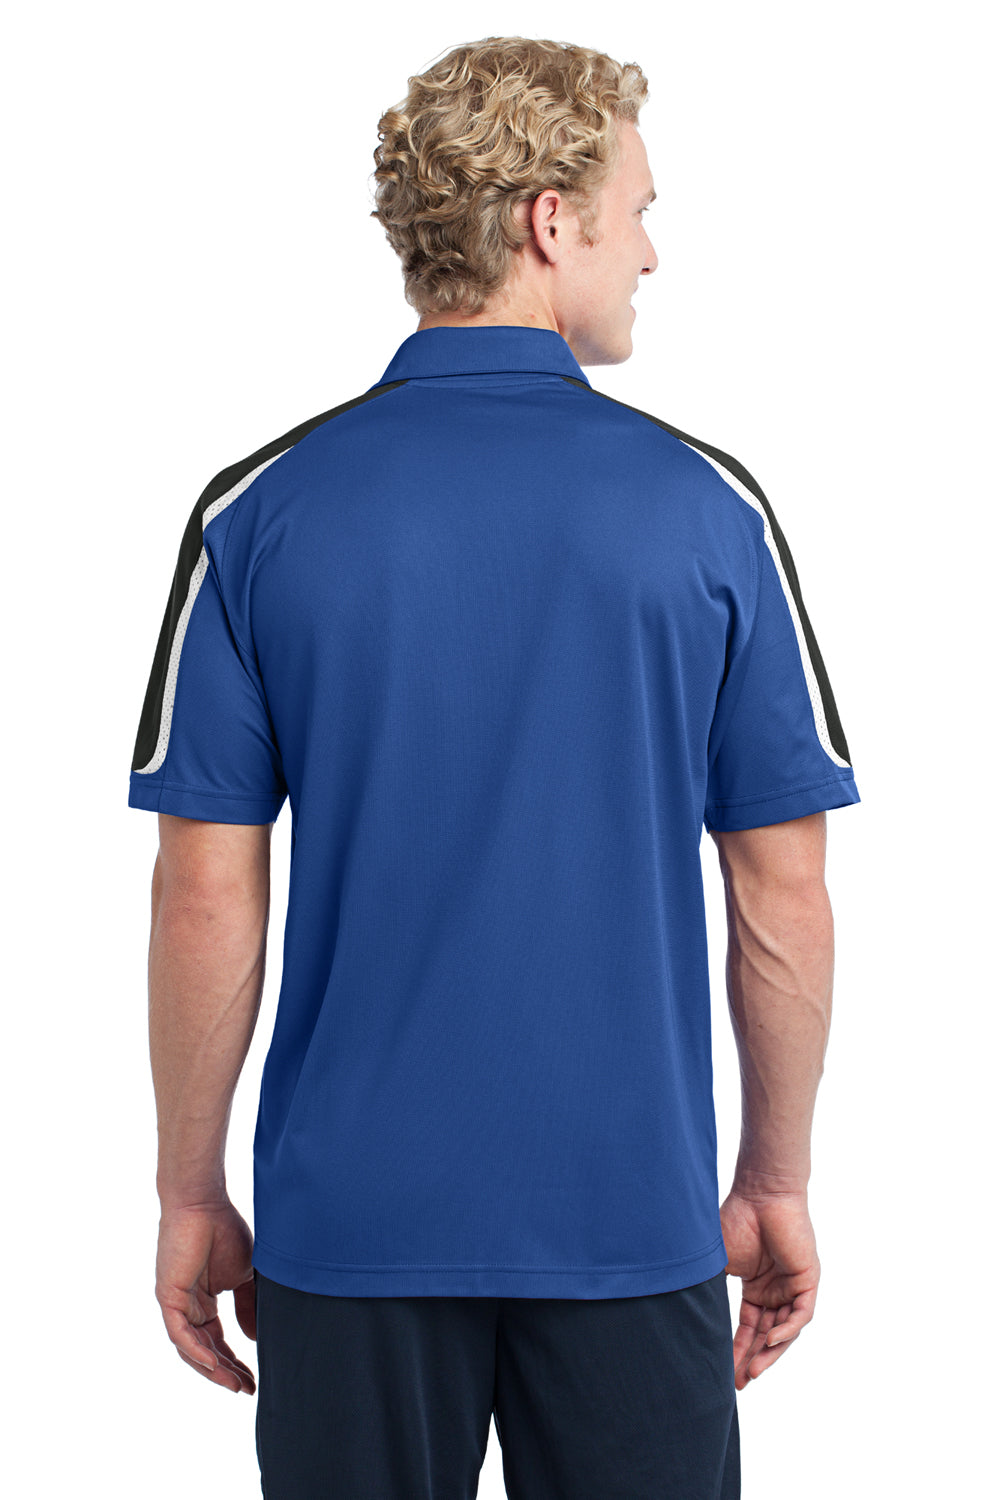 Sport-Tek ST658 Mens Sport-Wick Moisture Wicking Short Sleeve Polo Shirt Royal Blue/White/Black Back